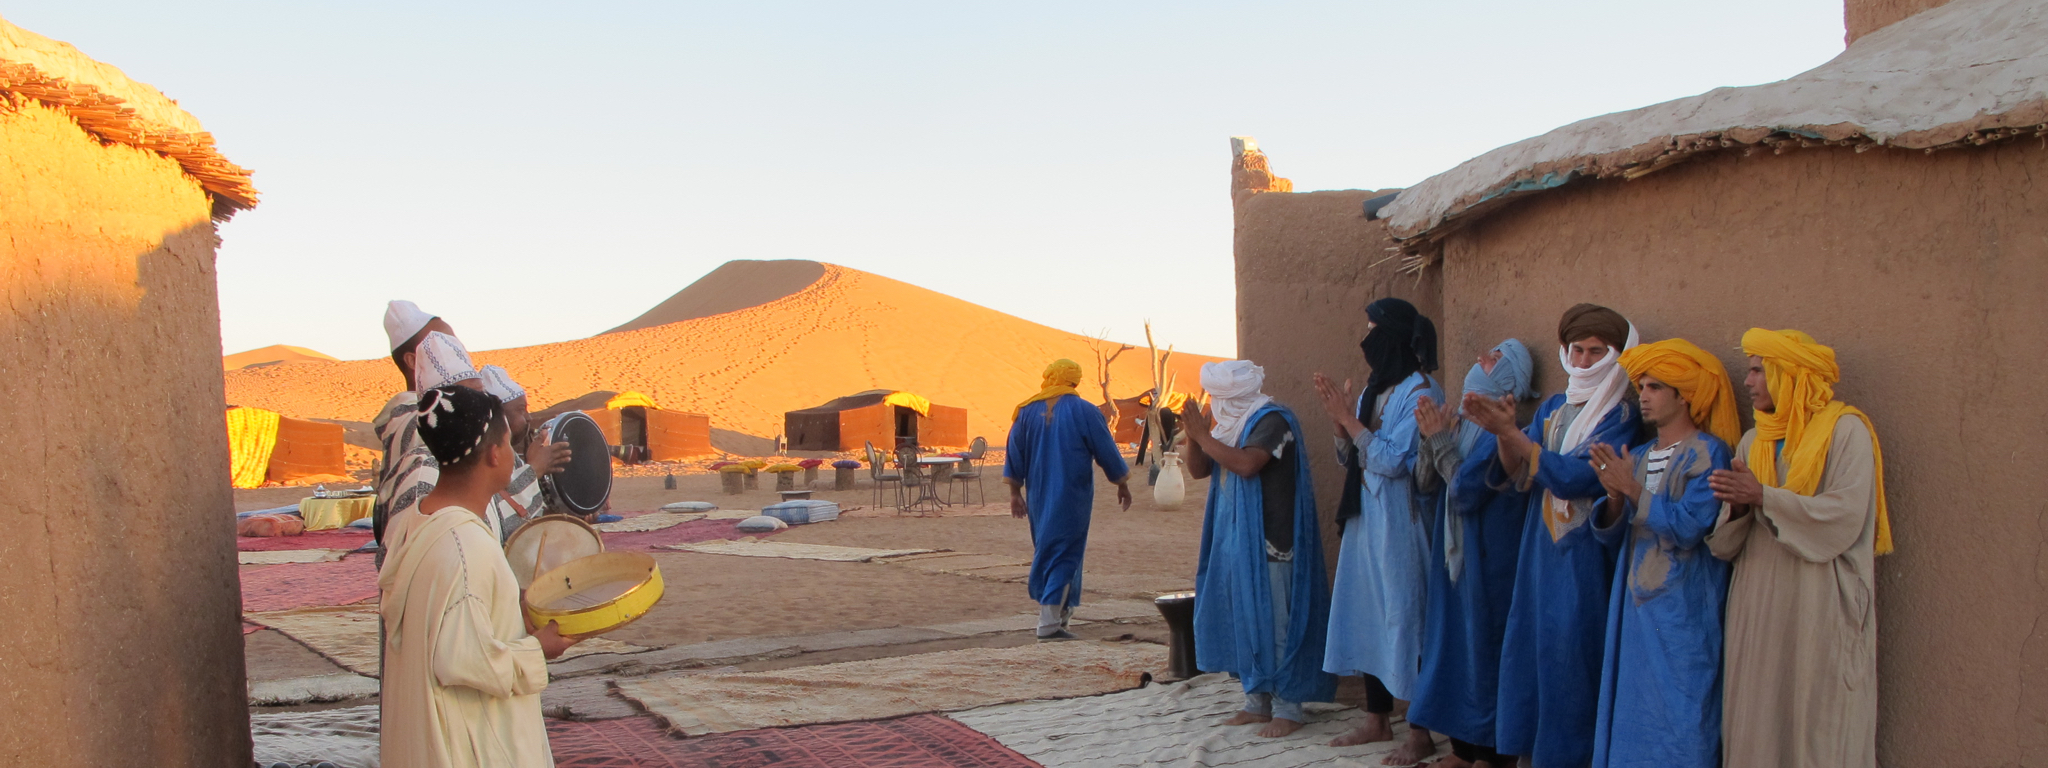 Op reis naar Marokko - geniet van de beleving met een overnachting in de Sahara